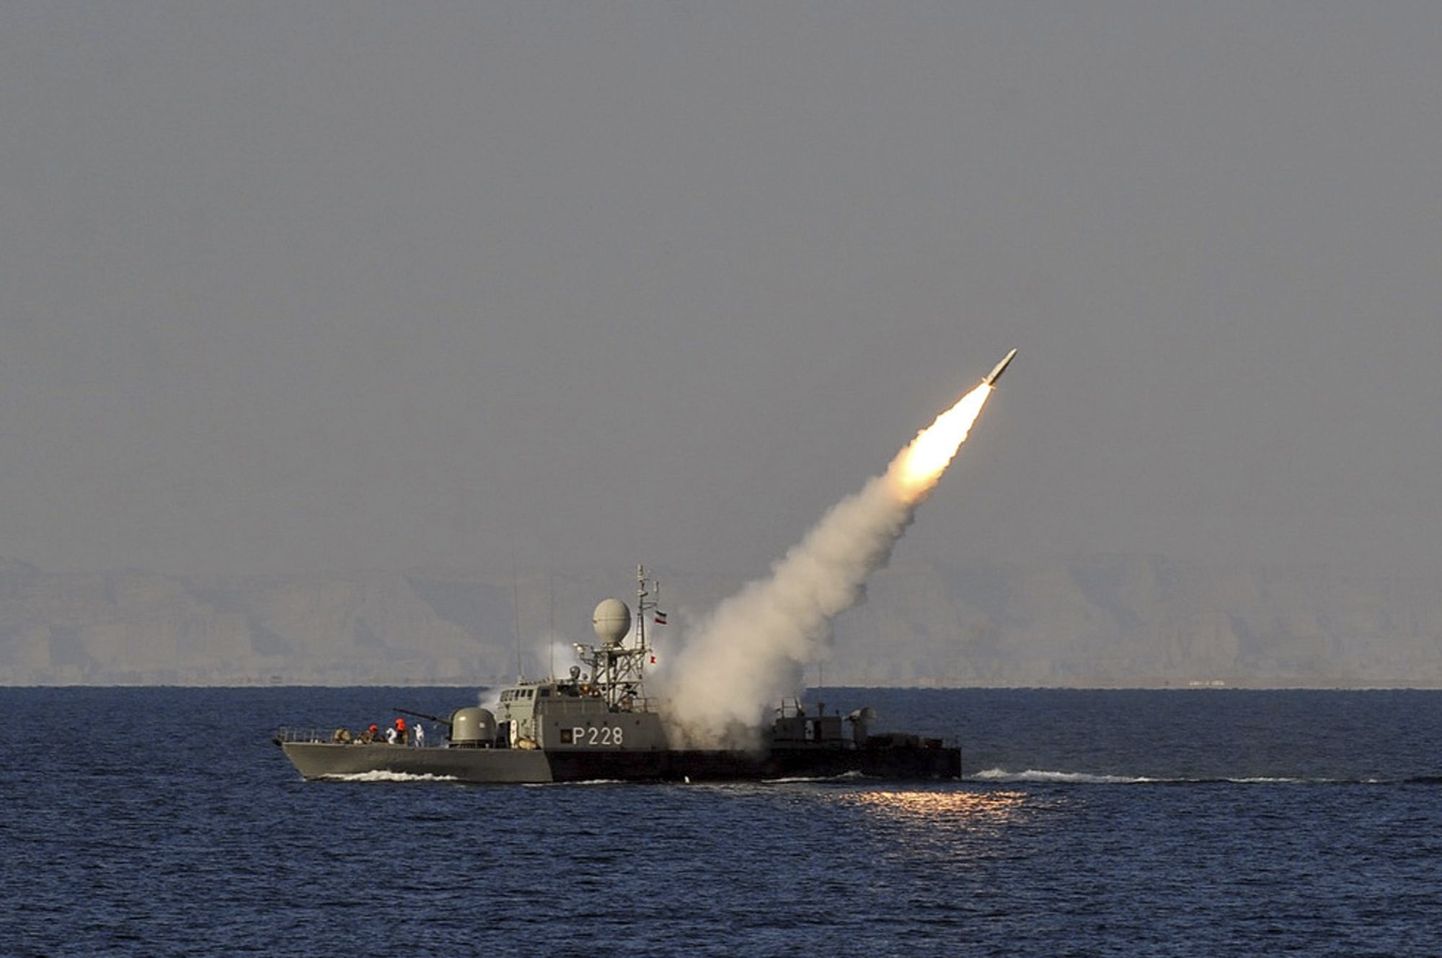 Iraani sõjalaevalt tulistati välja rakett.